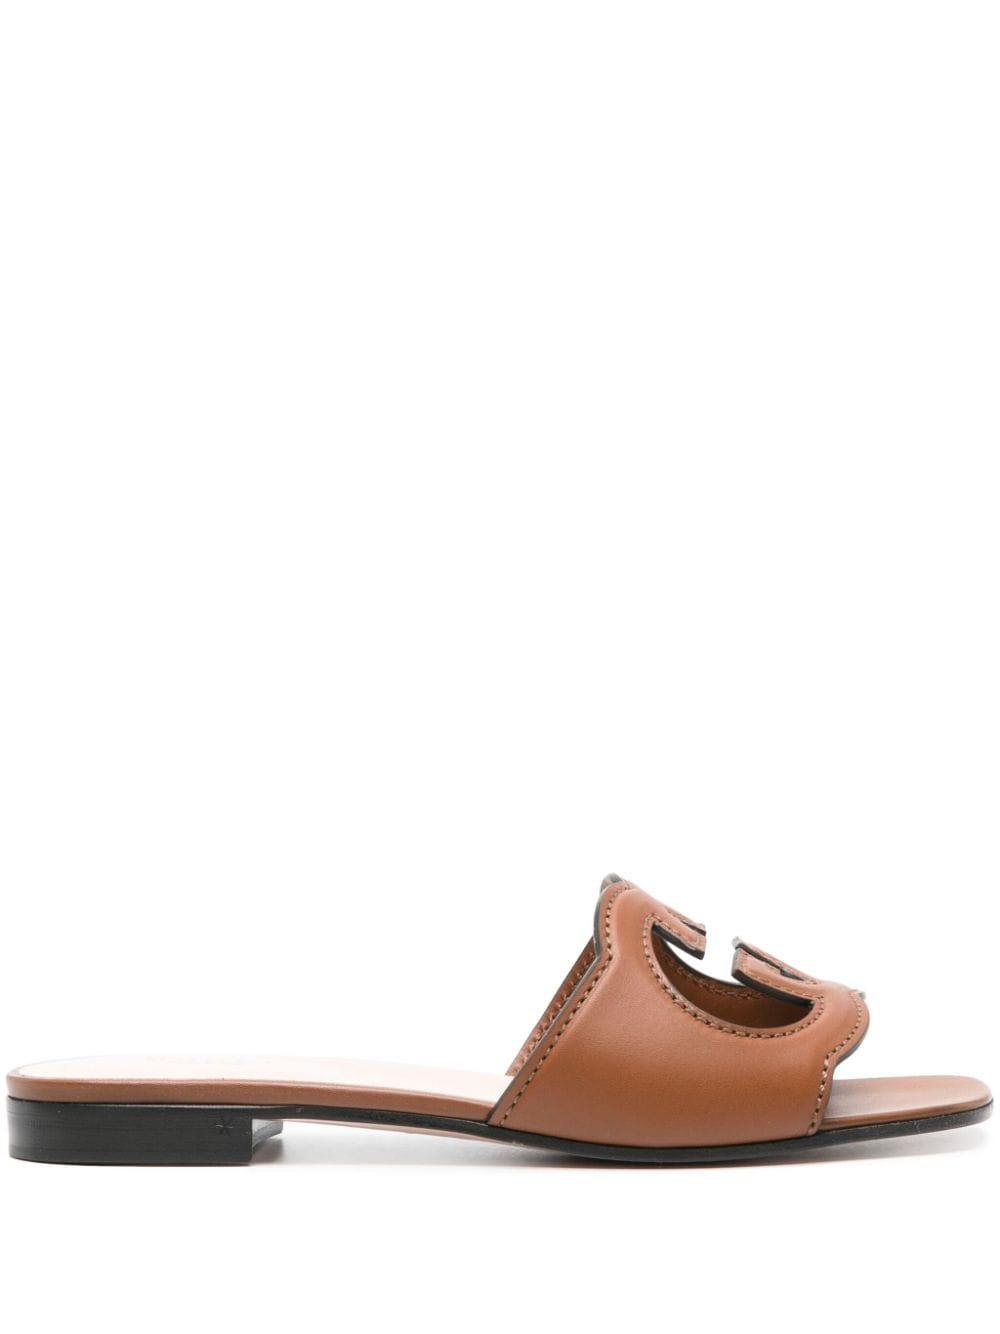 Gucci Interlocking G leather sandals - Brown von Gucci